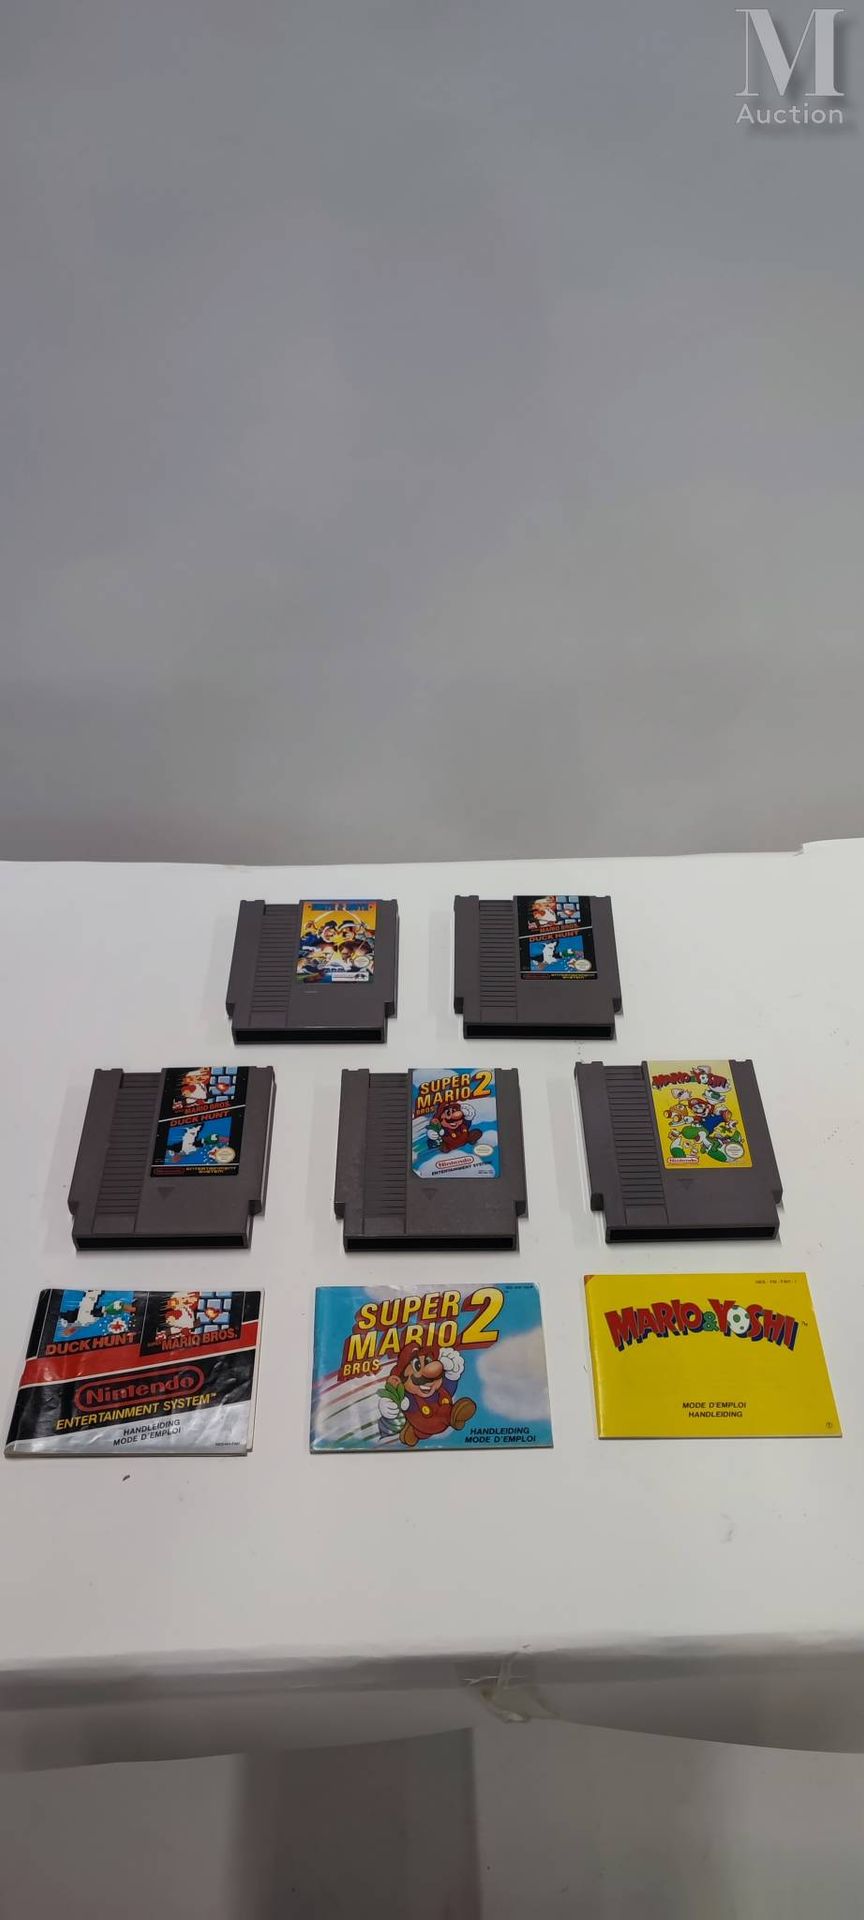 LOT NINTENDO NES PAL 任天堂的Nes伙伴套装

一套九个游戏，包括四个盒装游戏。

马里奥博士，耀西的饼干，俄罗斯方块，双龙二号，马里奥兄弟&hellip;